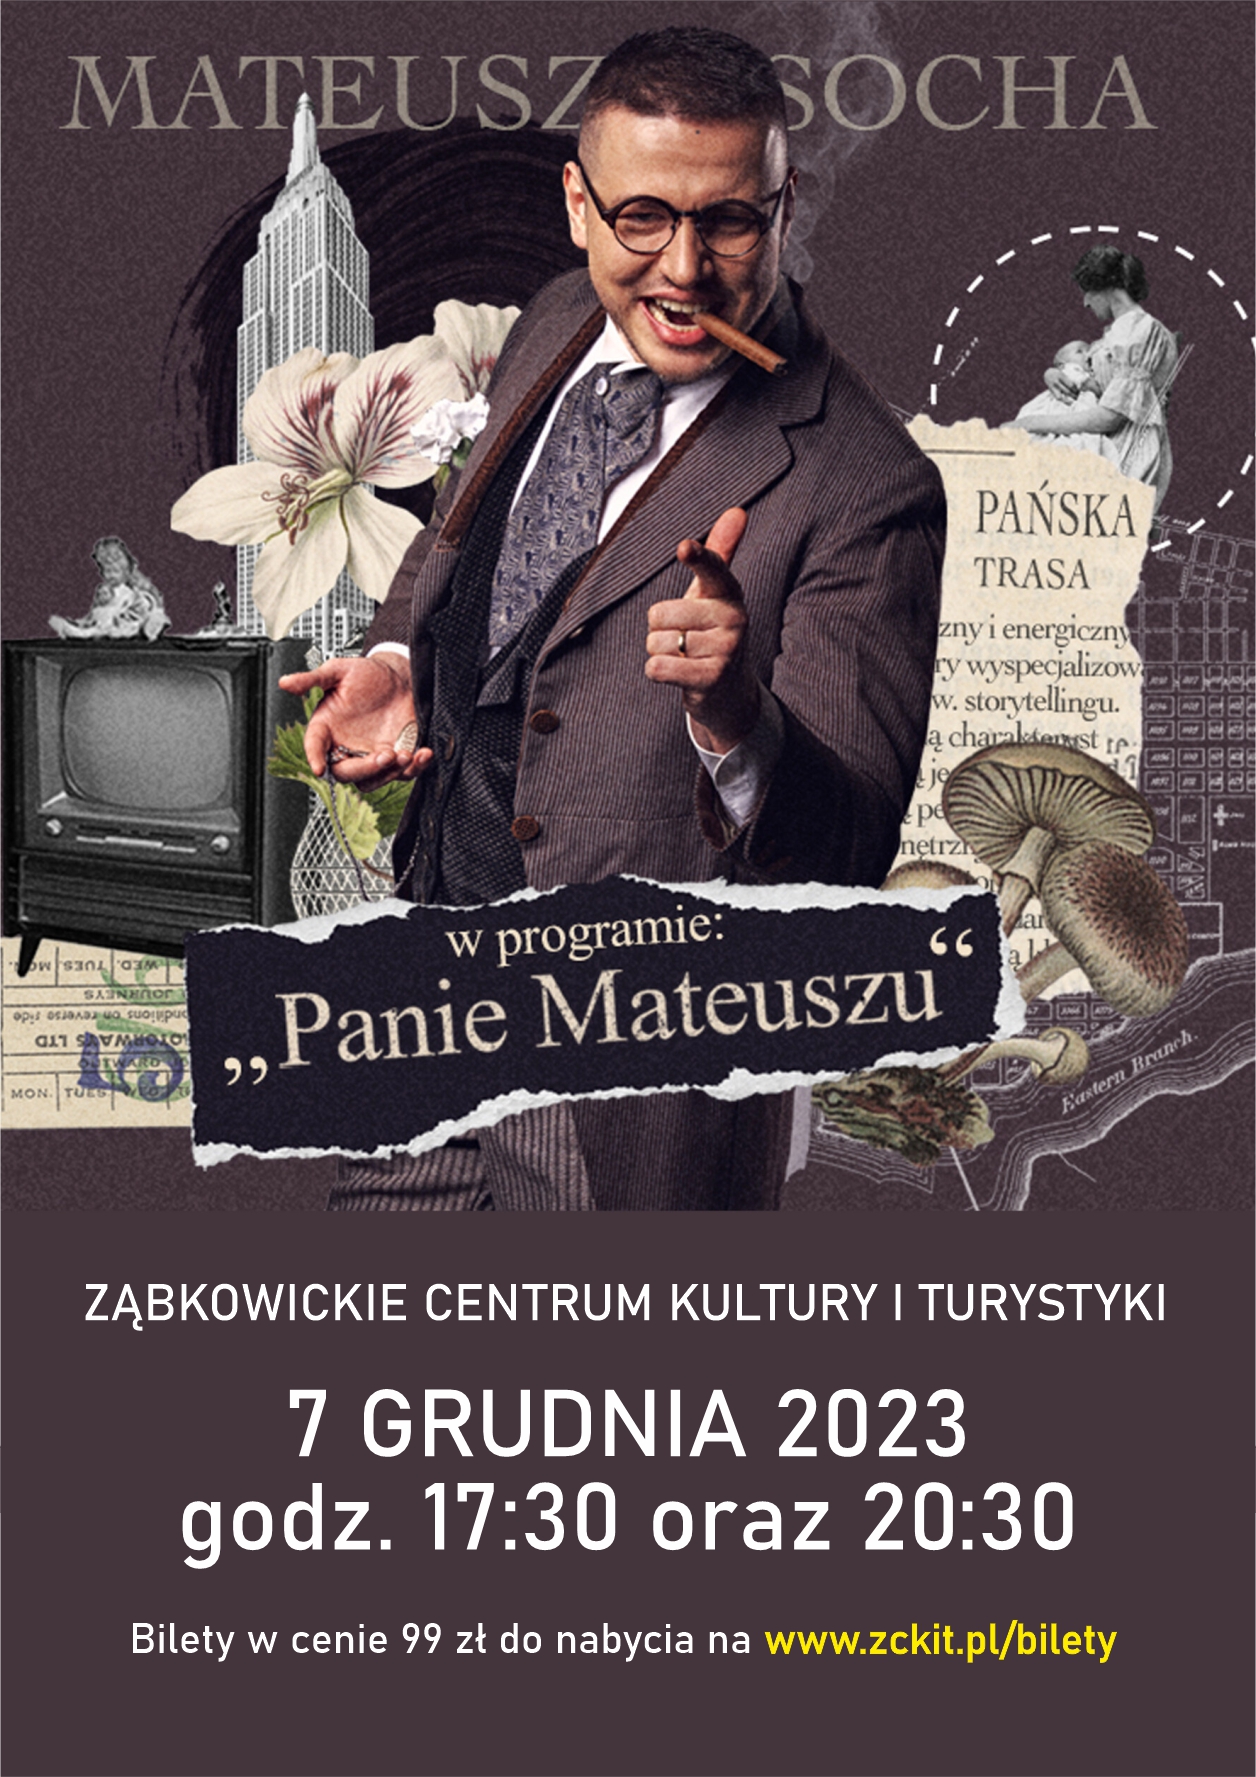 Plakat informacyjny o stand upie Mateusza Sochy w programie "Panie Mateuszu" 7 grudnia 2023 o godzinie 17:30 i 20:30 w Ząbkowickim Centrum Kultury i Turystyki. Na plakacie znajduje się zdjęcie elegancko ubranego mężczyzny.